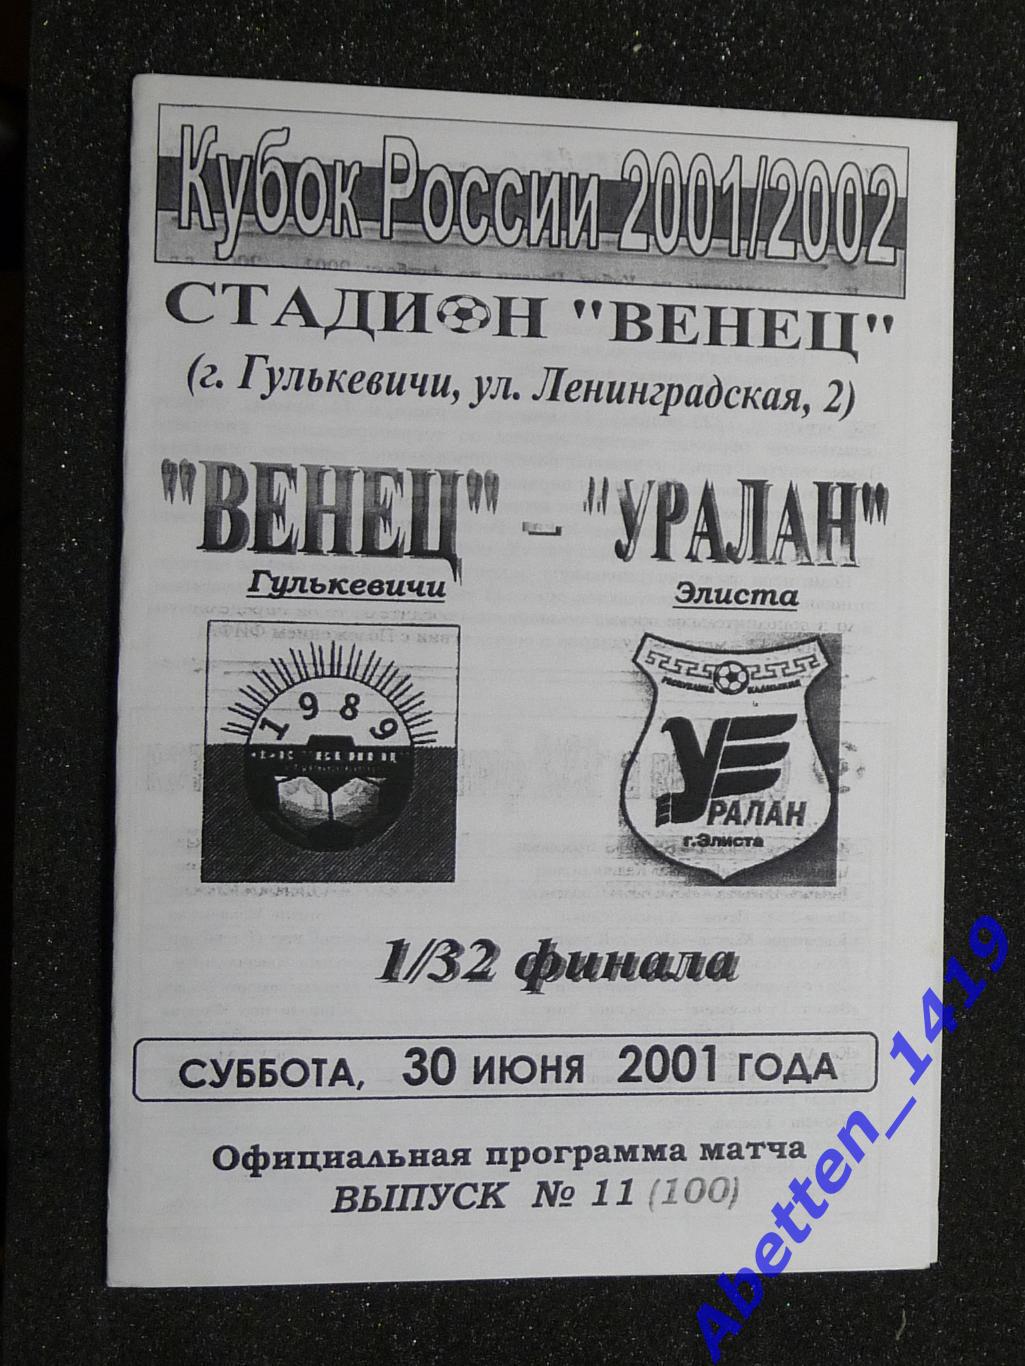 Венец Гулькевичи - Уралан Элиста. Кубок России 2001/2002. 1/32 финала.